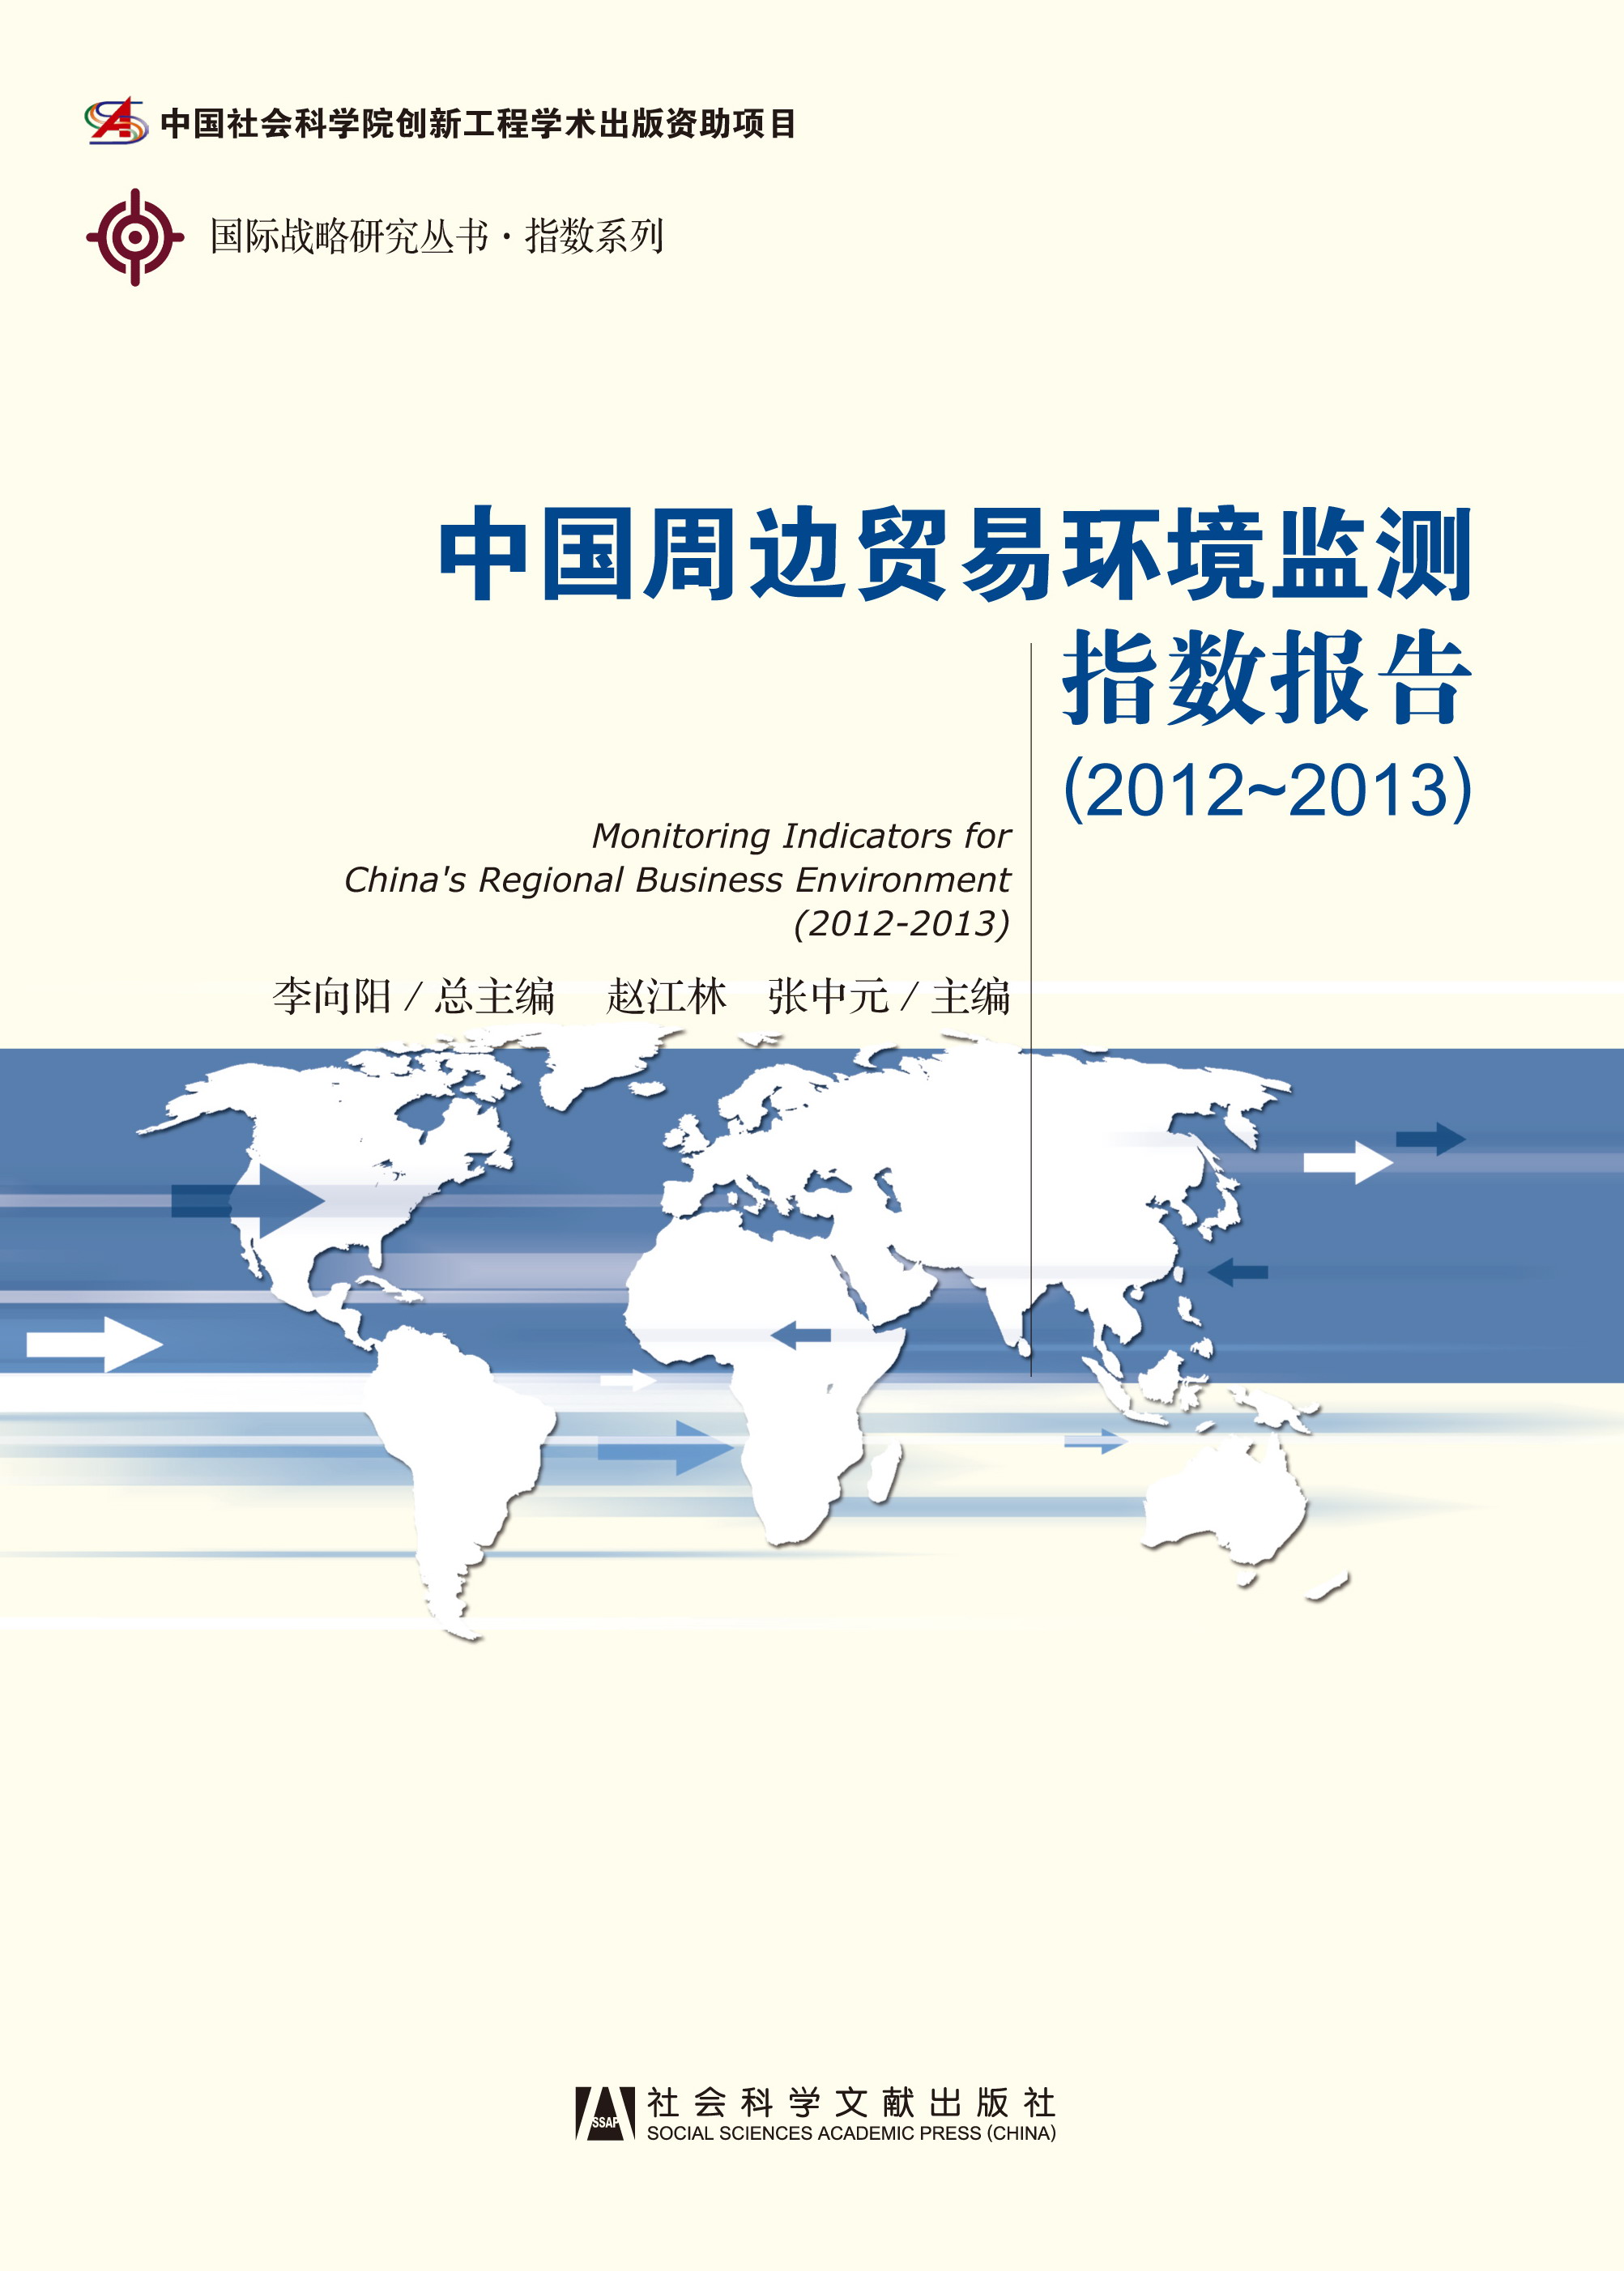 中国周边贸易环境监测指数报告(2012-2013)